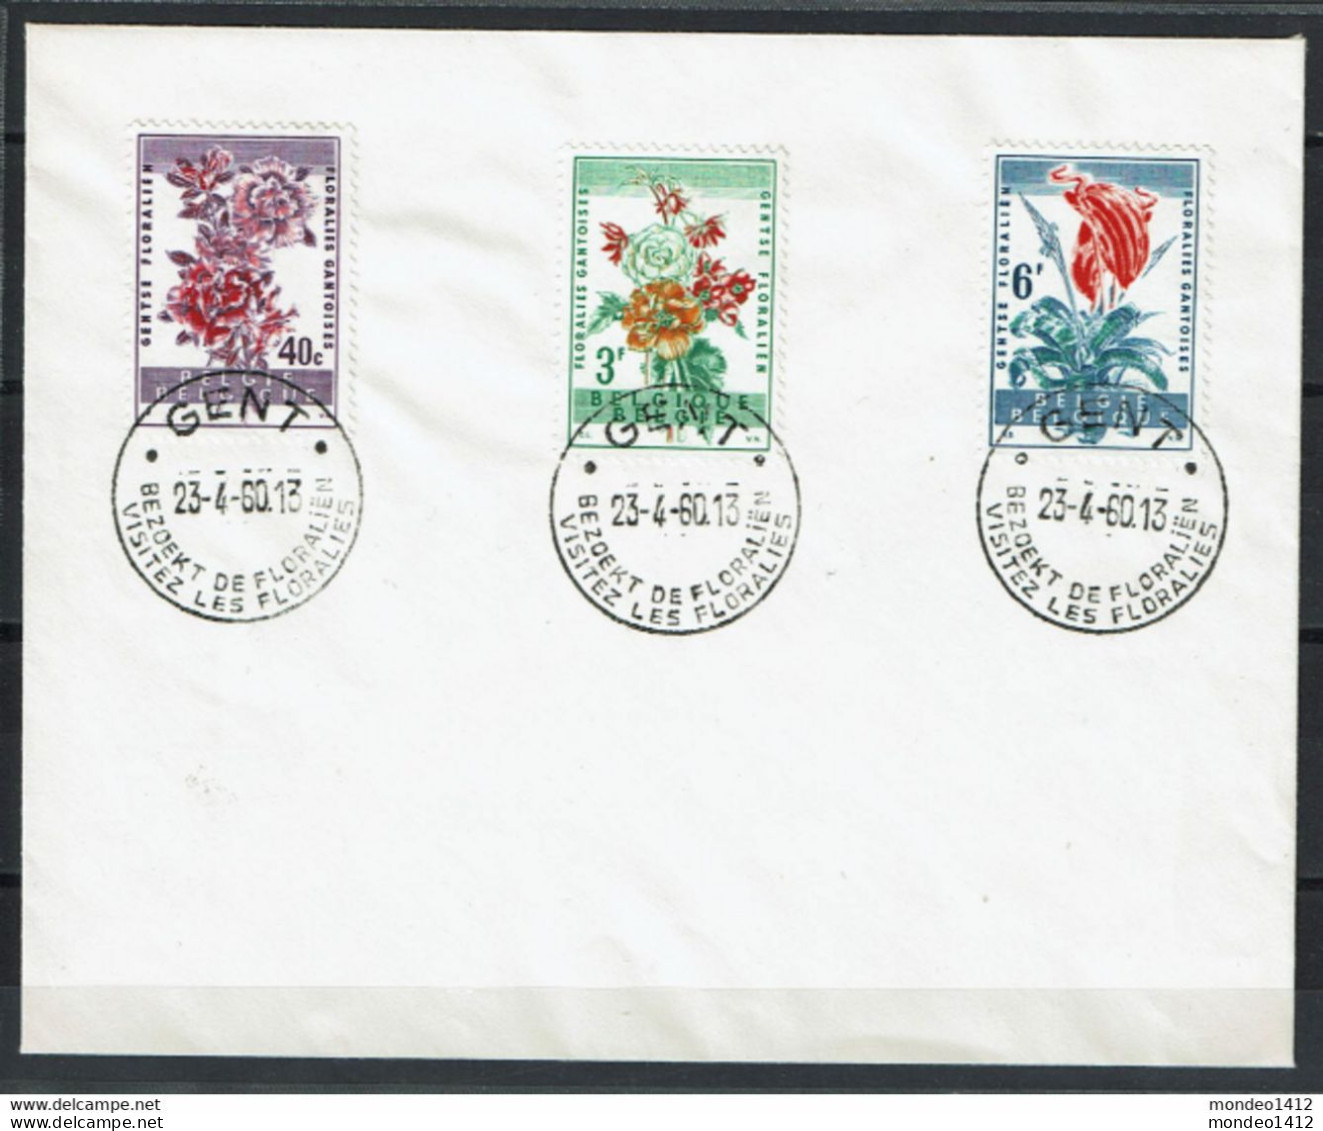 België - 1122-1124 - Stempel Gent - Bezoekt De Floraliën - Briefe U. Dokumente